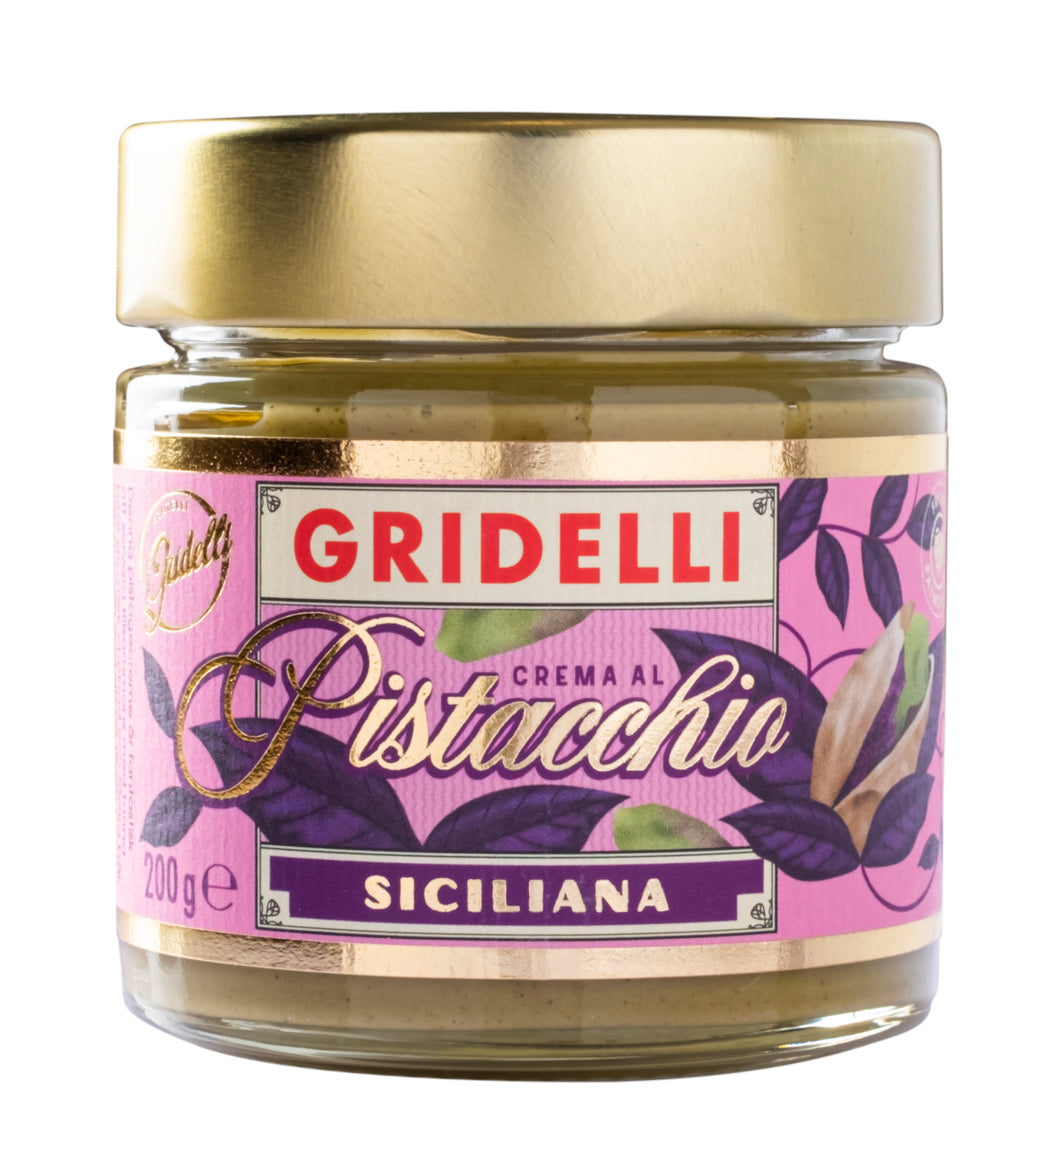 Gridelli's Pistagecréme